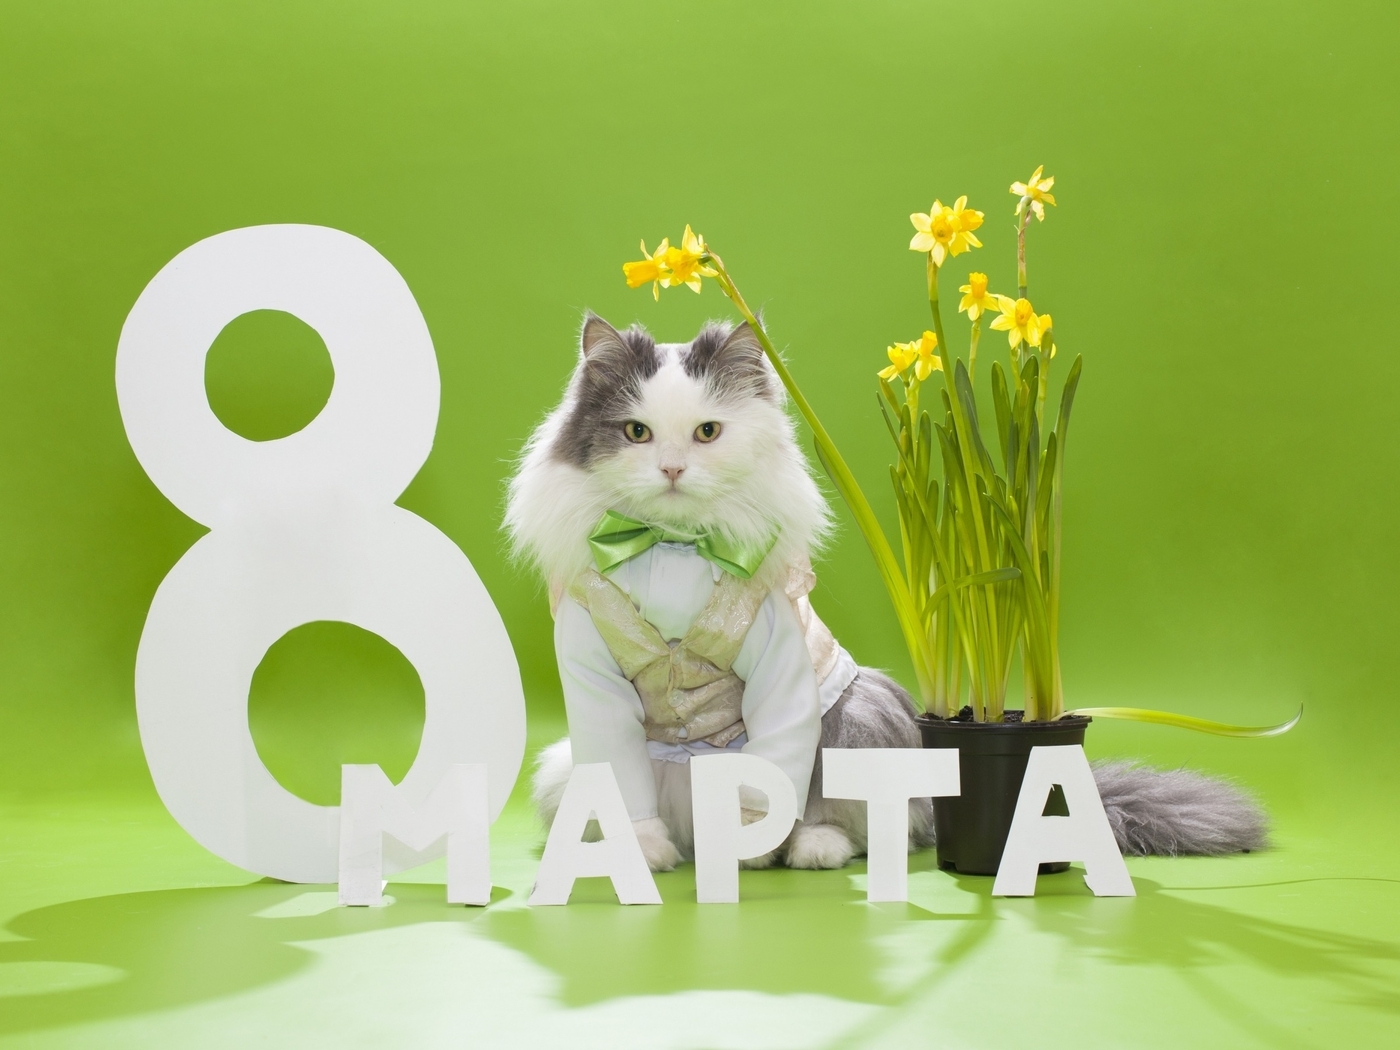 Картинка: Праздник, поздравление, 8 марта, весна, кот, пушистый, бантик, букет, цветы, жёлтые нарциссы, зелёный фон